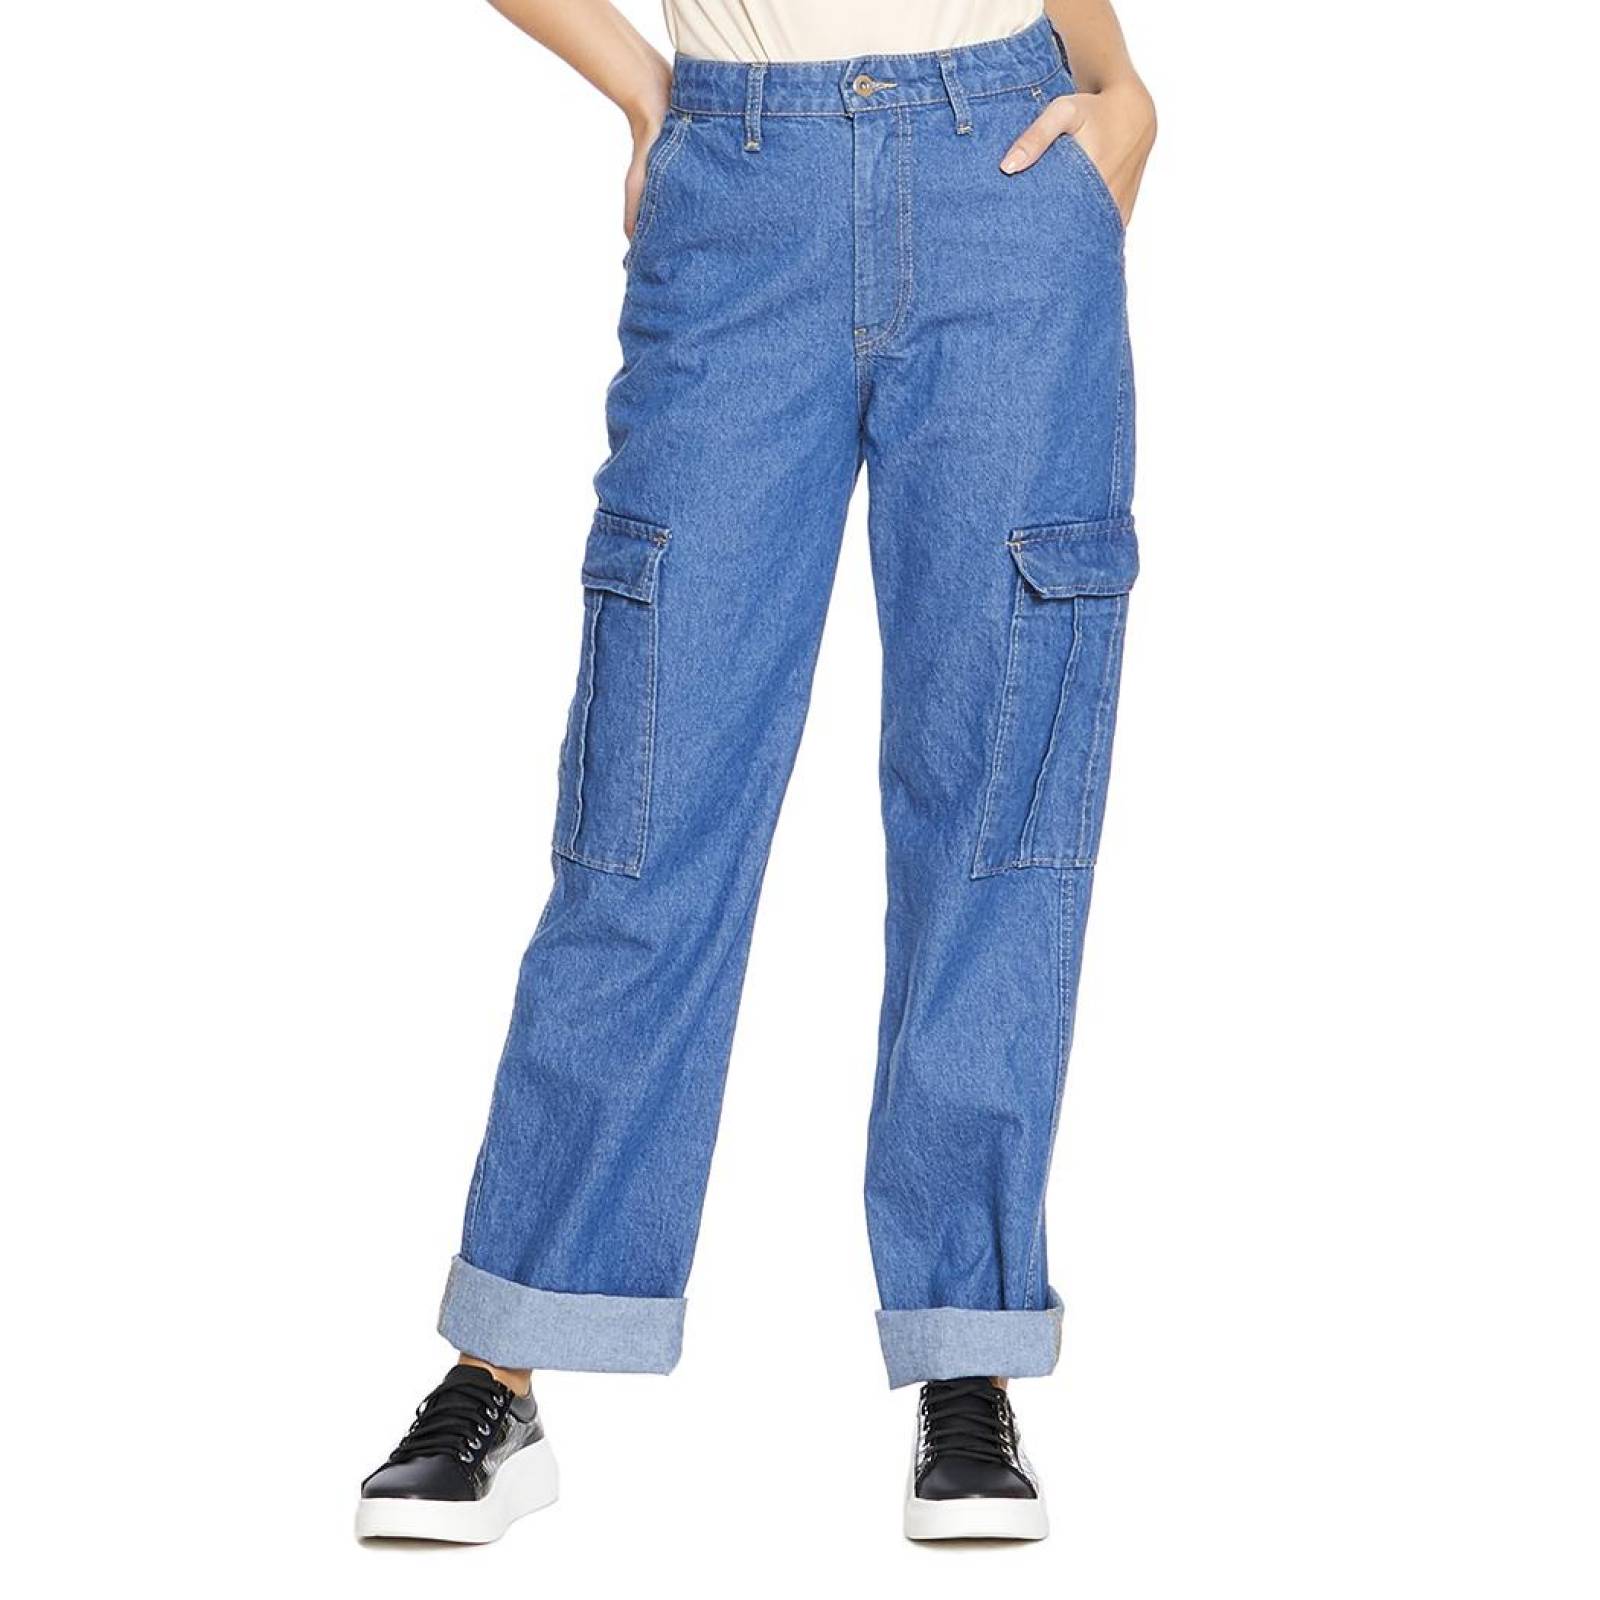 Pantalón Jeans Mom Tiro Alto Wide Leg Cargo Para Mujer Juvenil Cómodo 110109